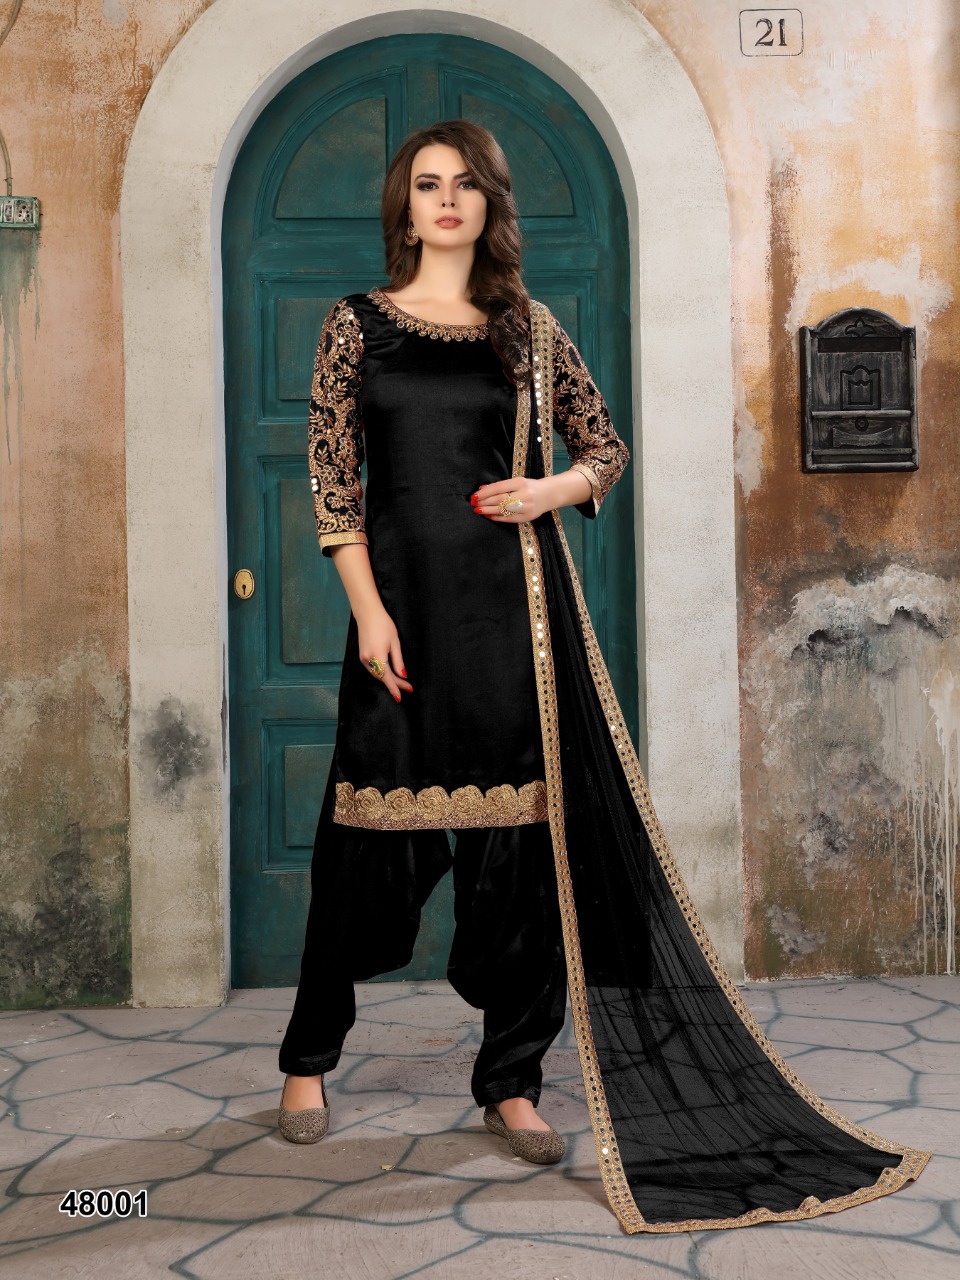 Twisha Presents Aanaya 48000 Series Silk Grandeur Look Patial Salwar Suit Catalog